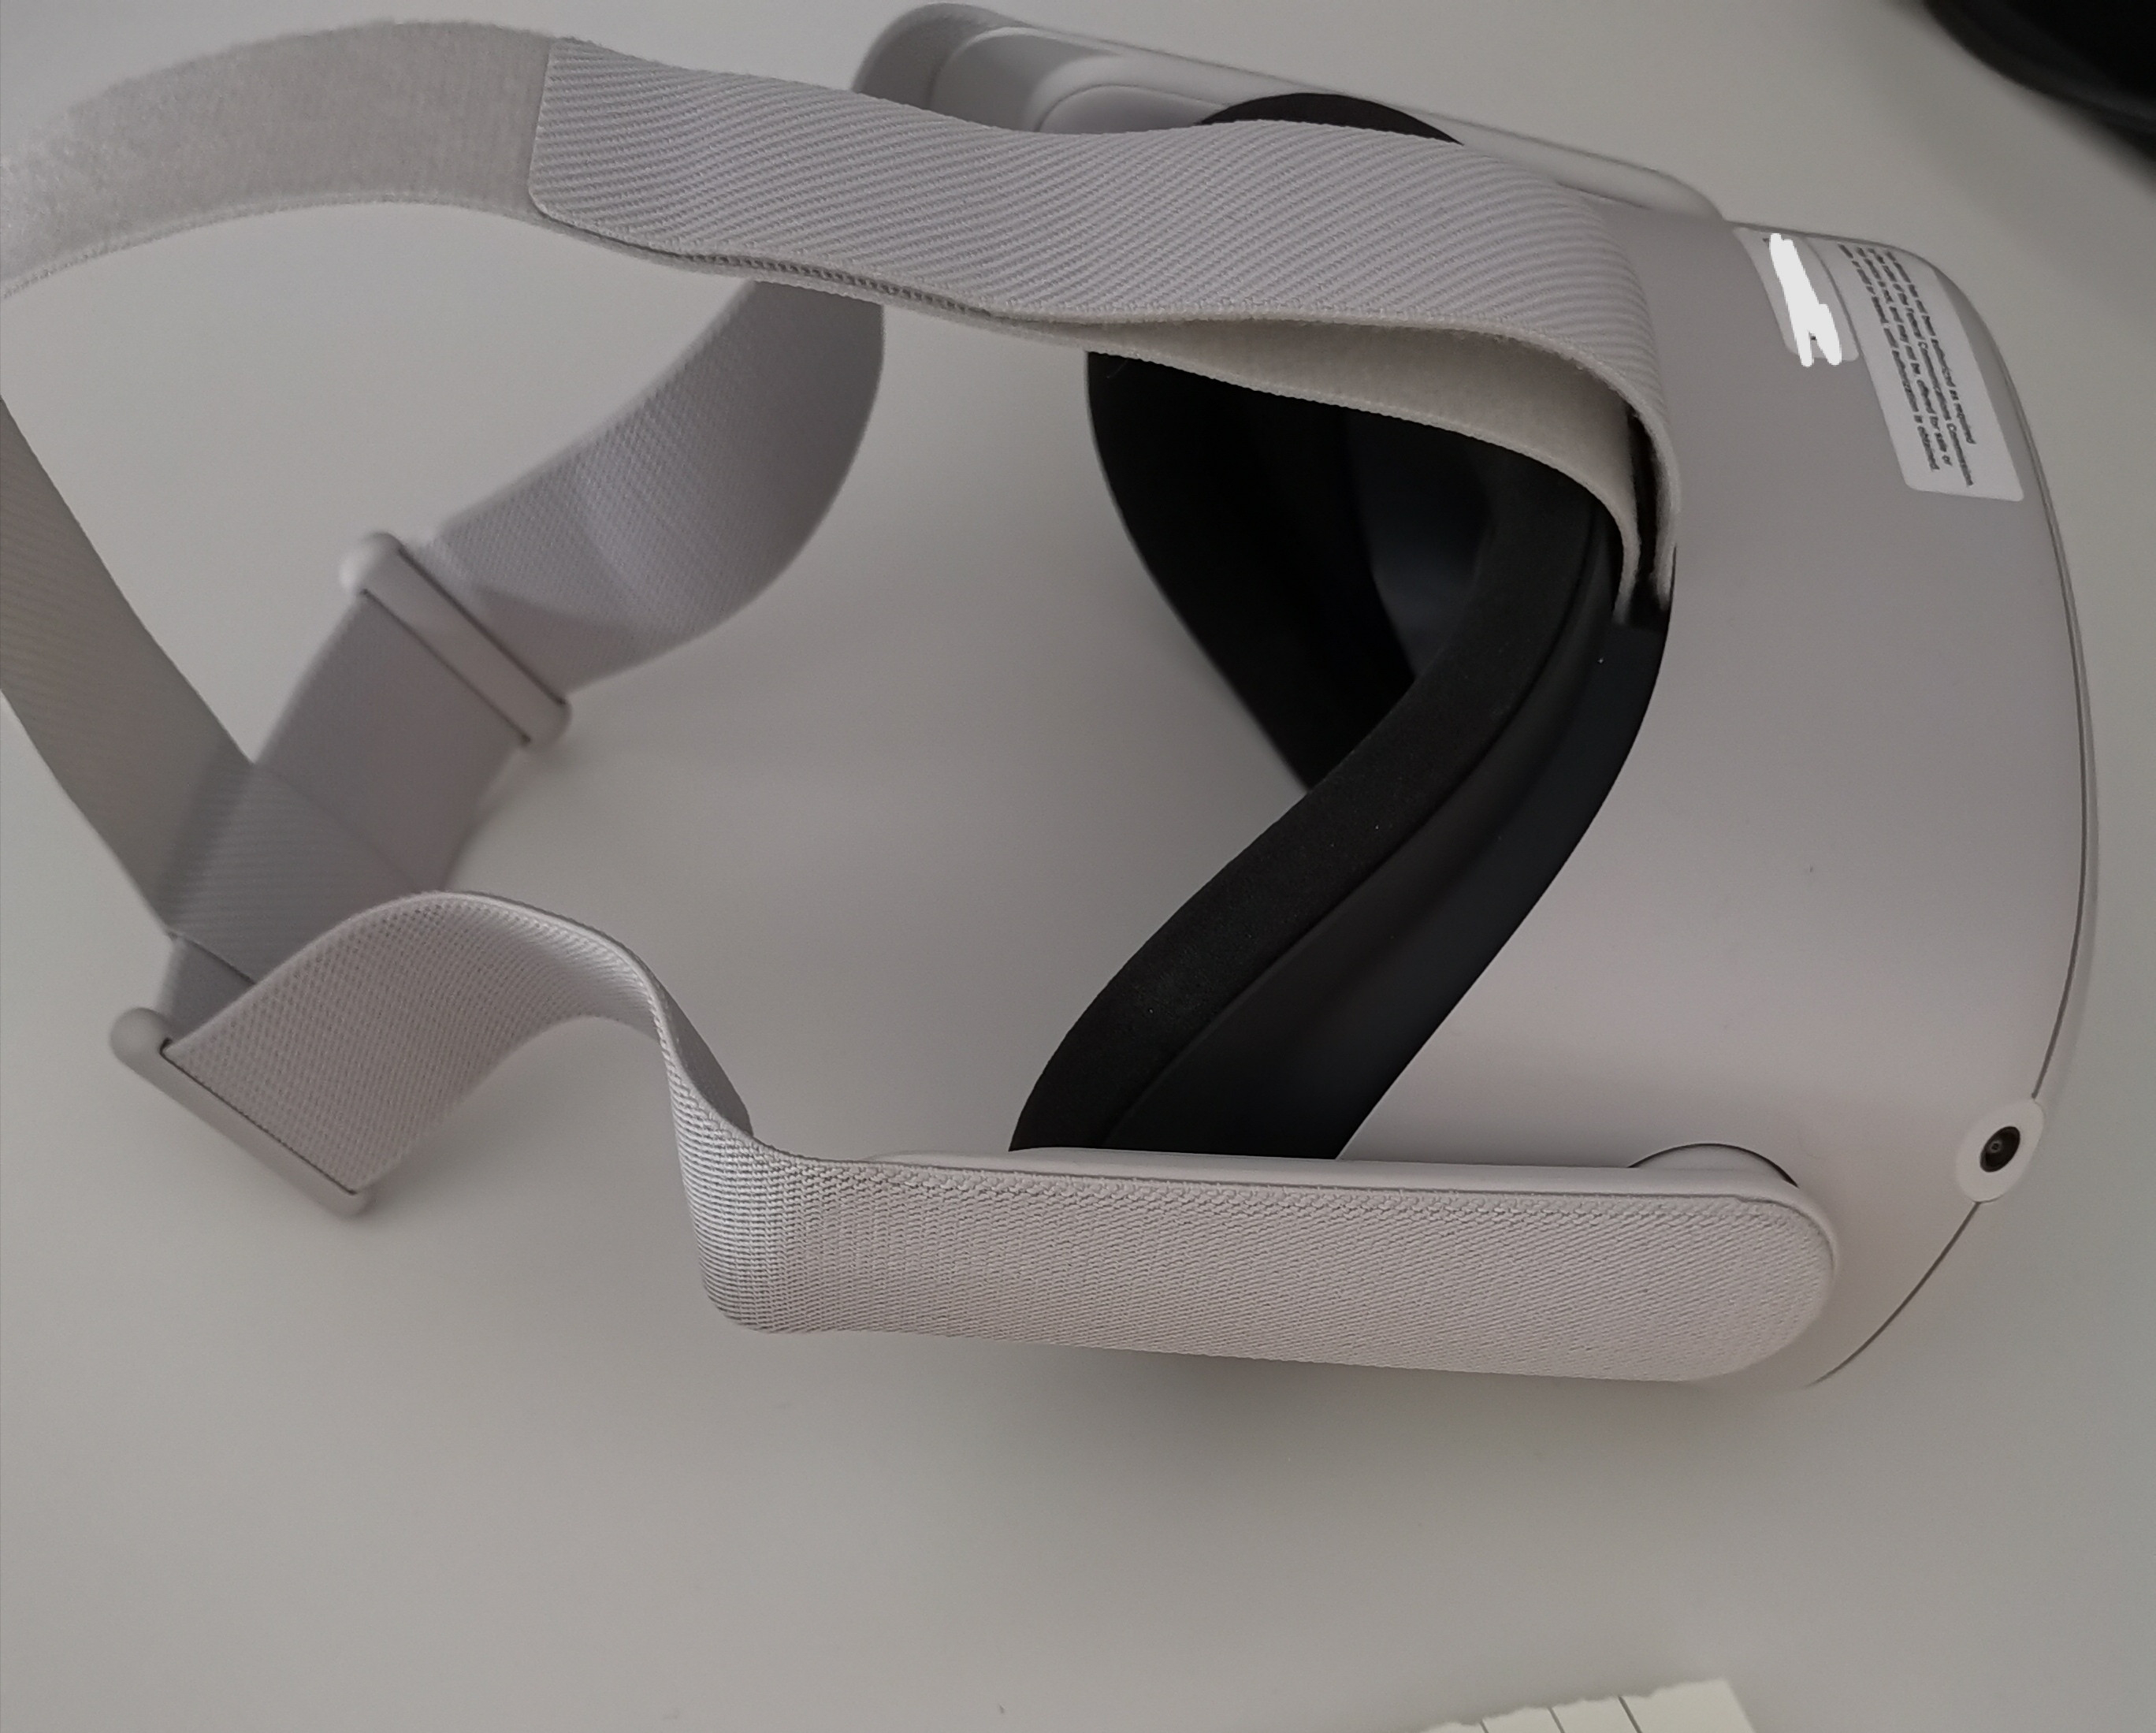 VR-гарнитура Oculus Quest 2 дебютирует в сентябре. Представлены фото прототипа